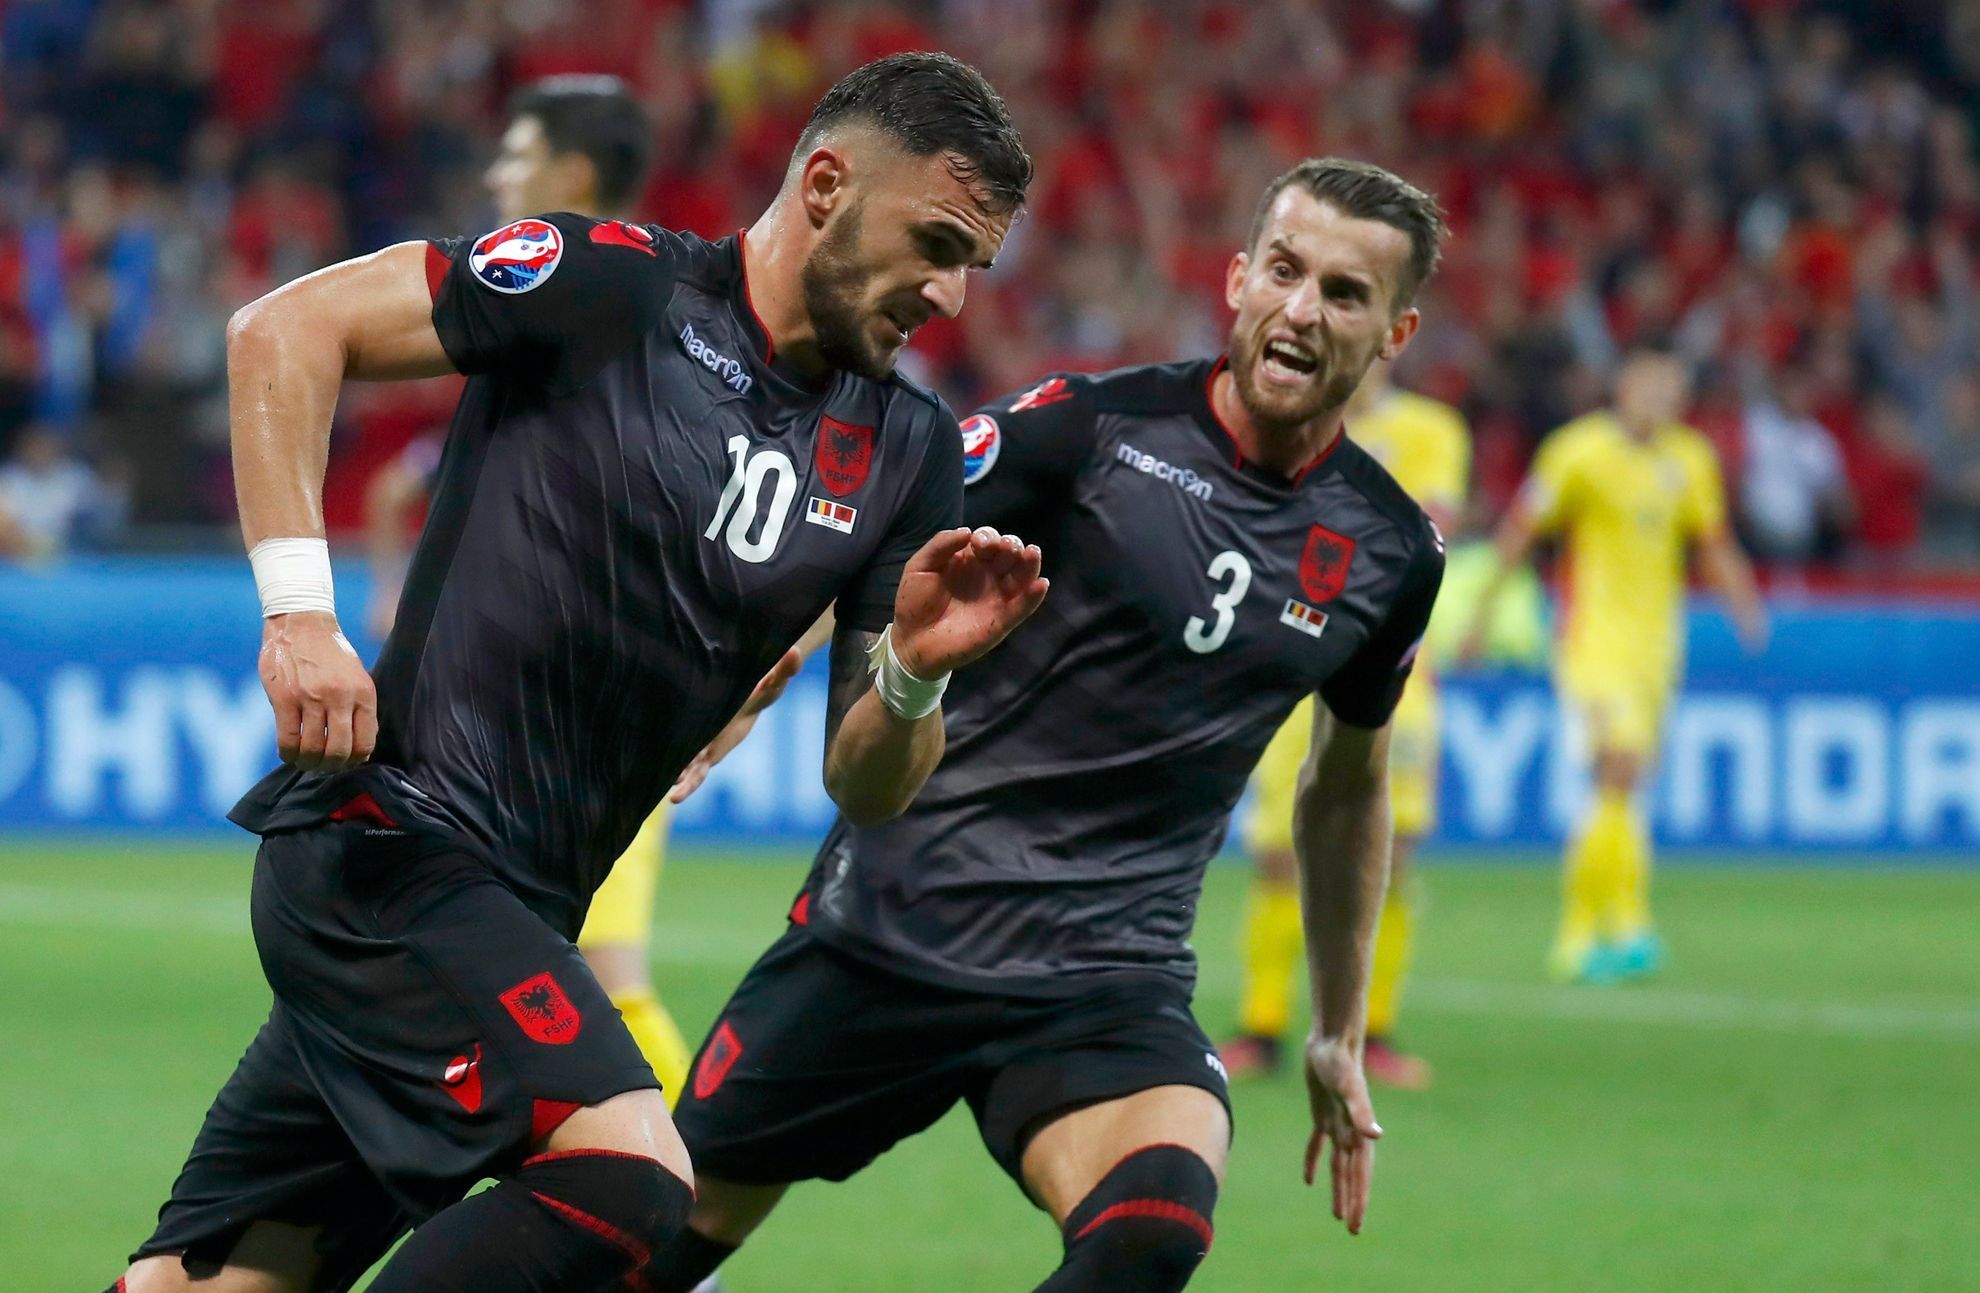 Euro 2016, Rumunsko-Albánie: Armando Sadiku slaví gól na 0:1